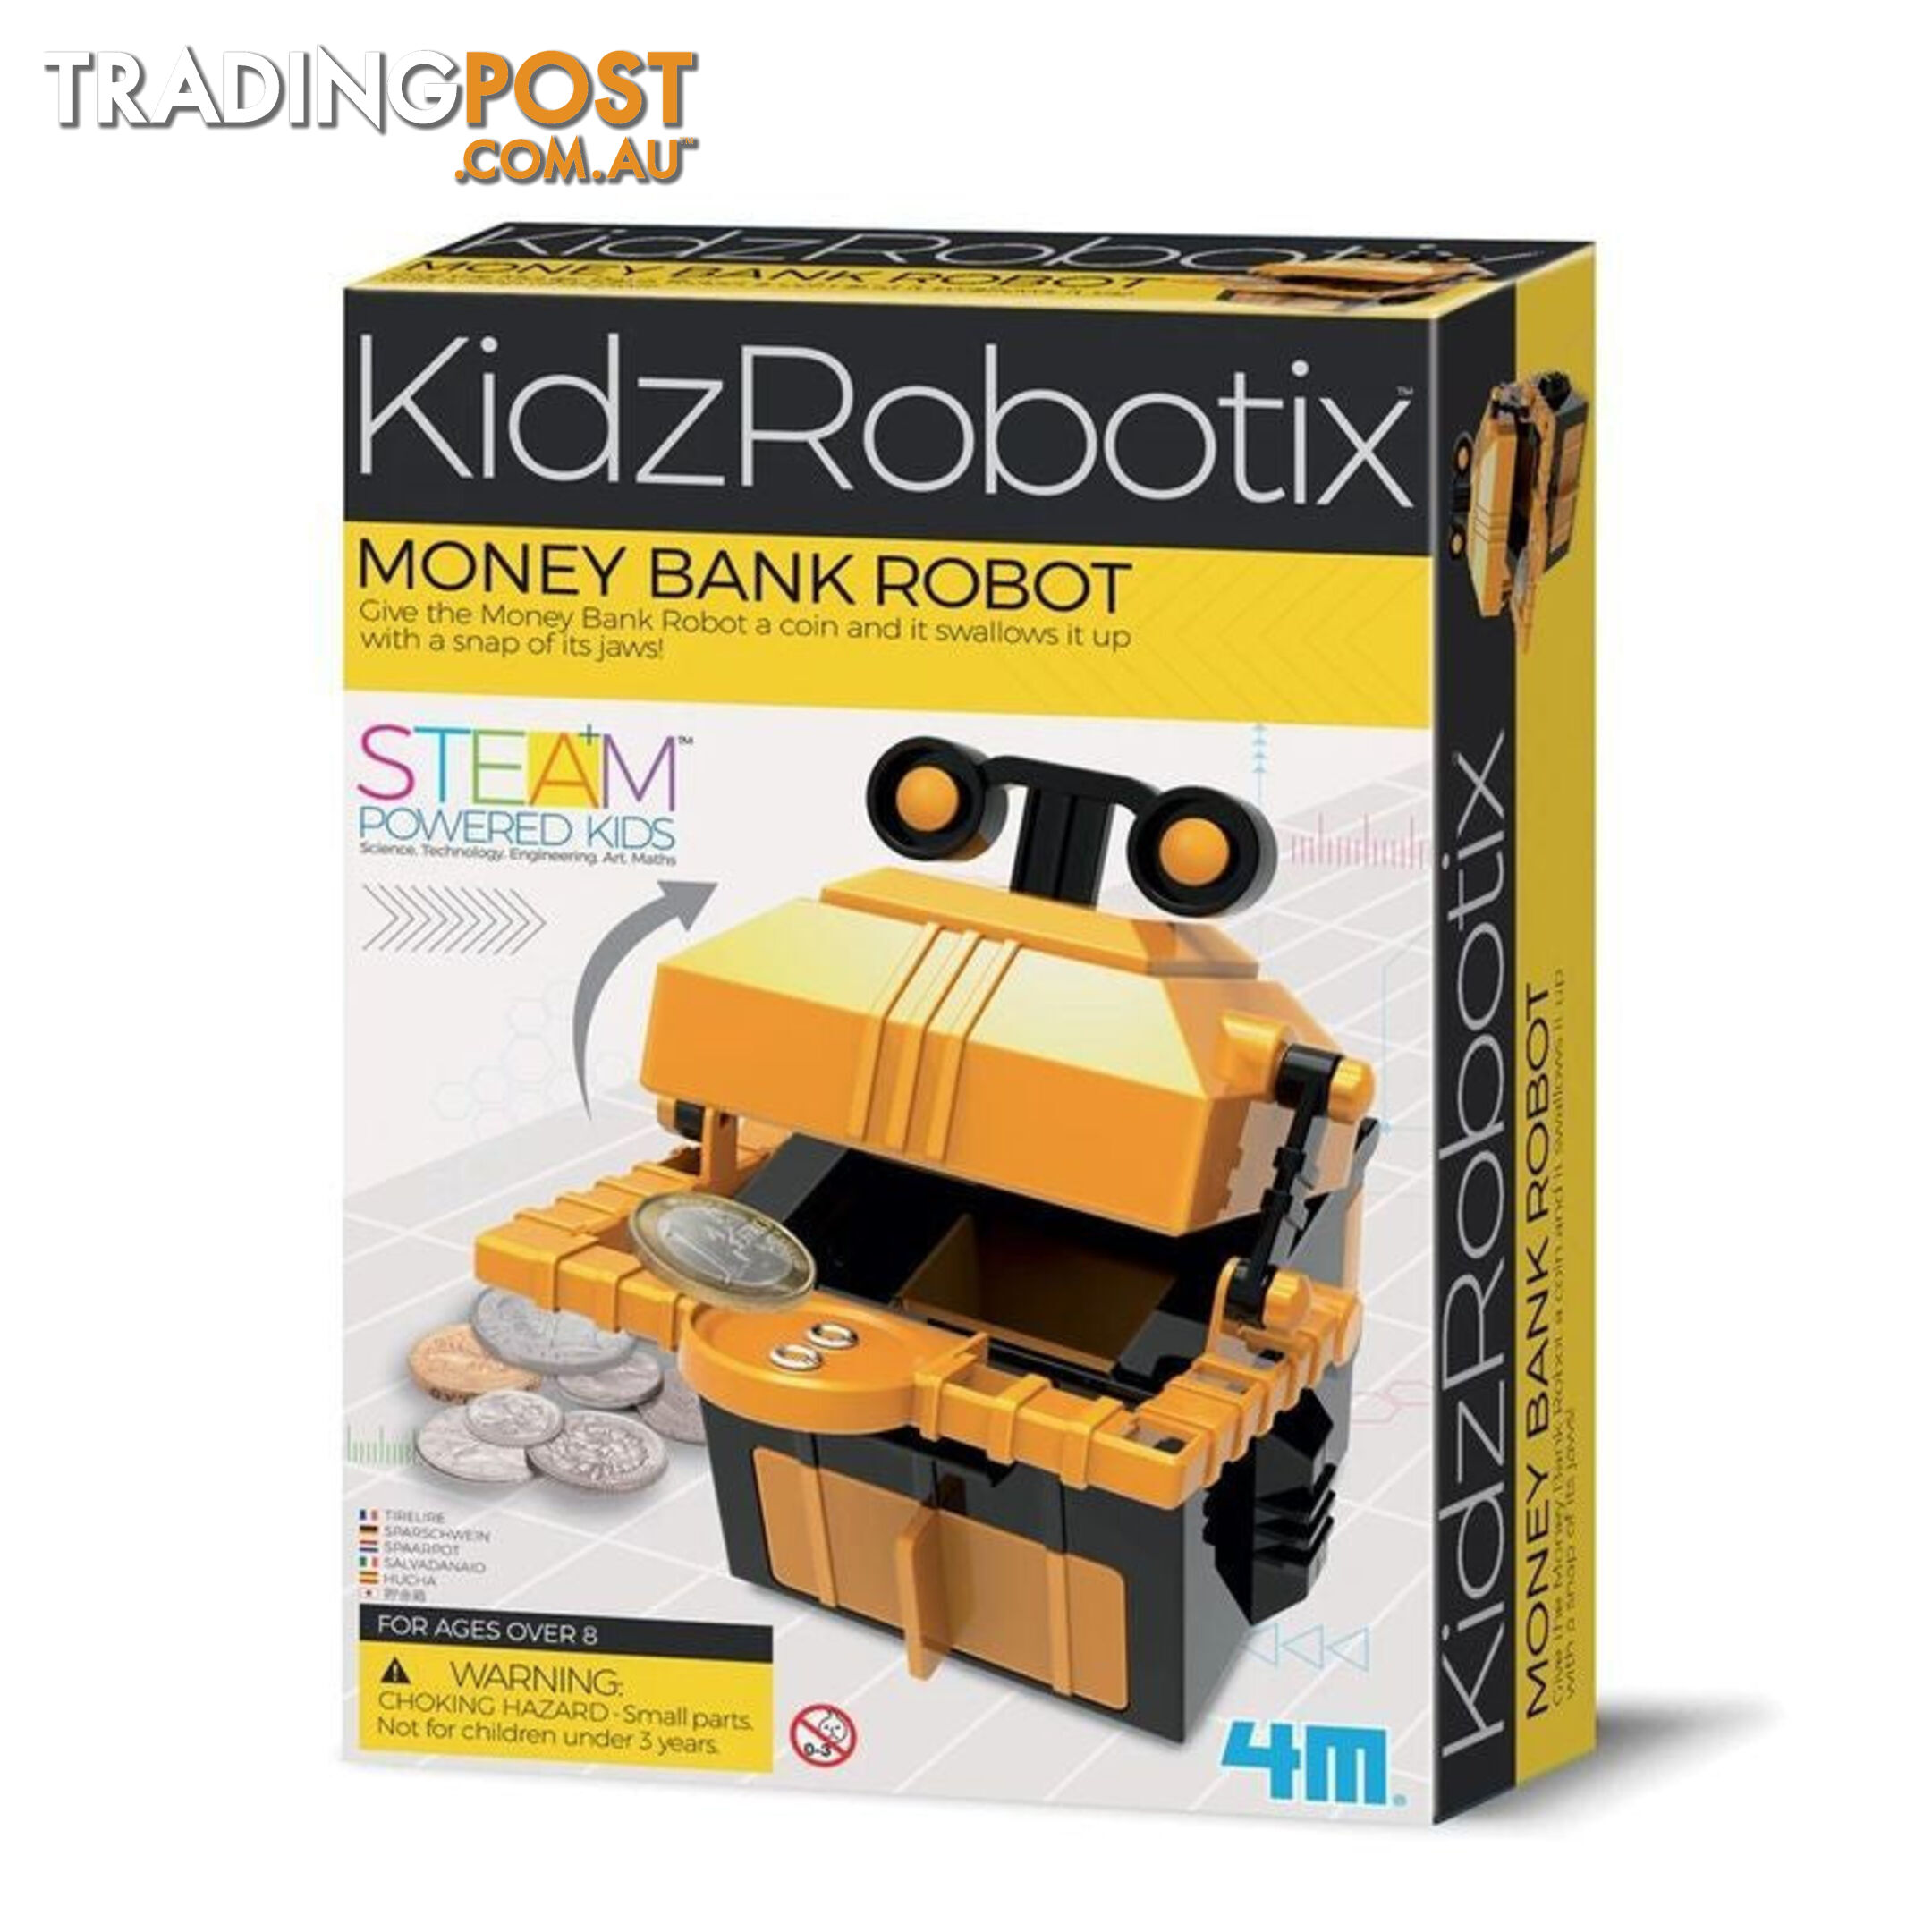 4m - Kidz Robotix Money Bank Robot - Steam -jpfsg3422 - 4893156034229